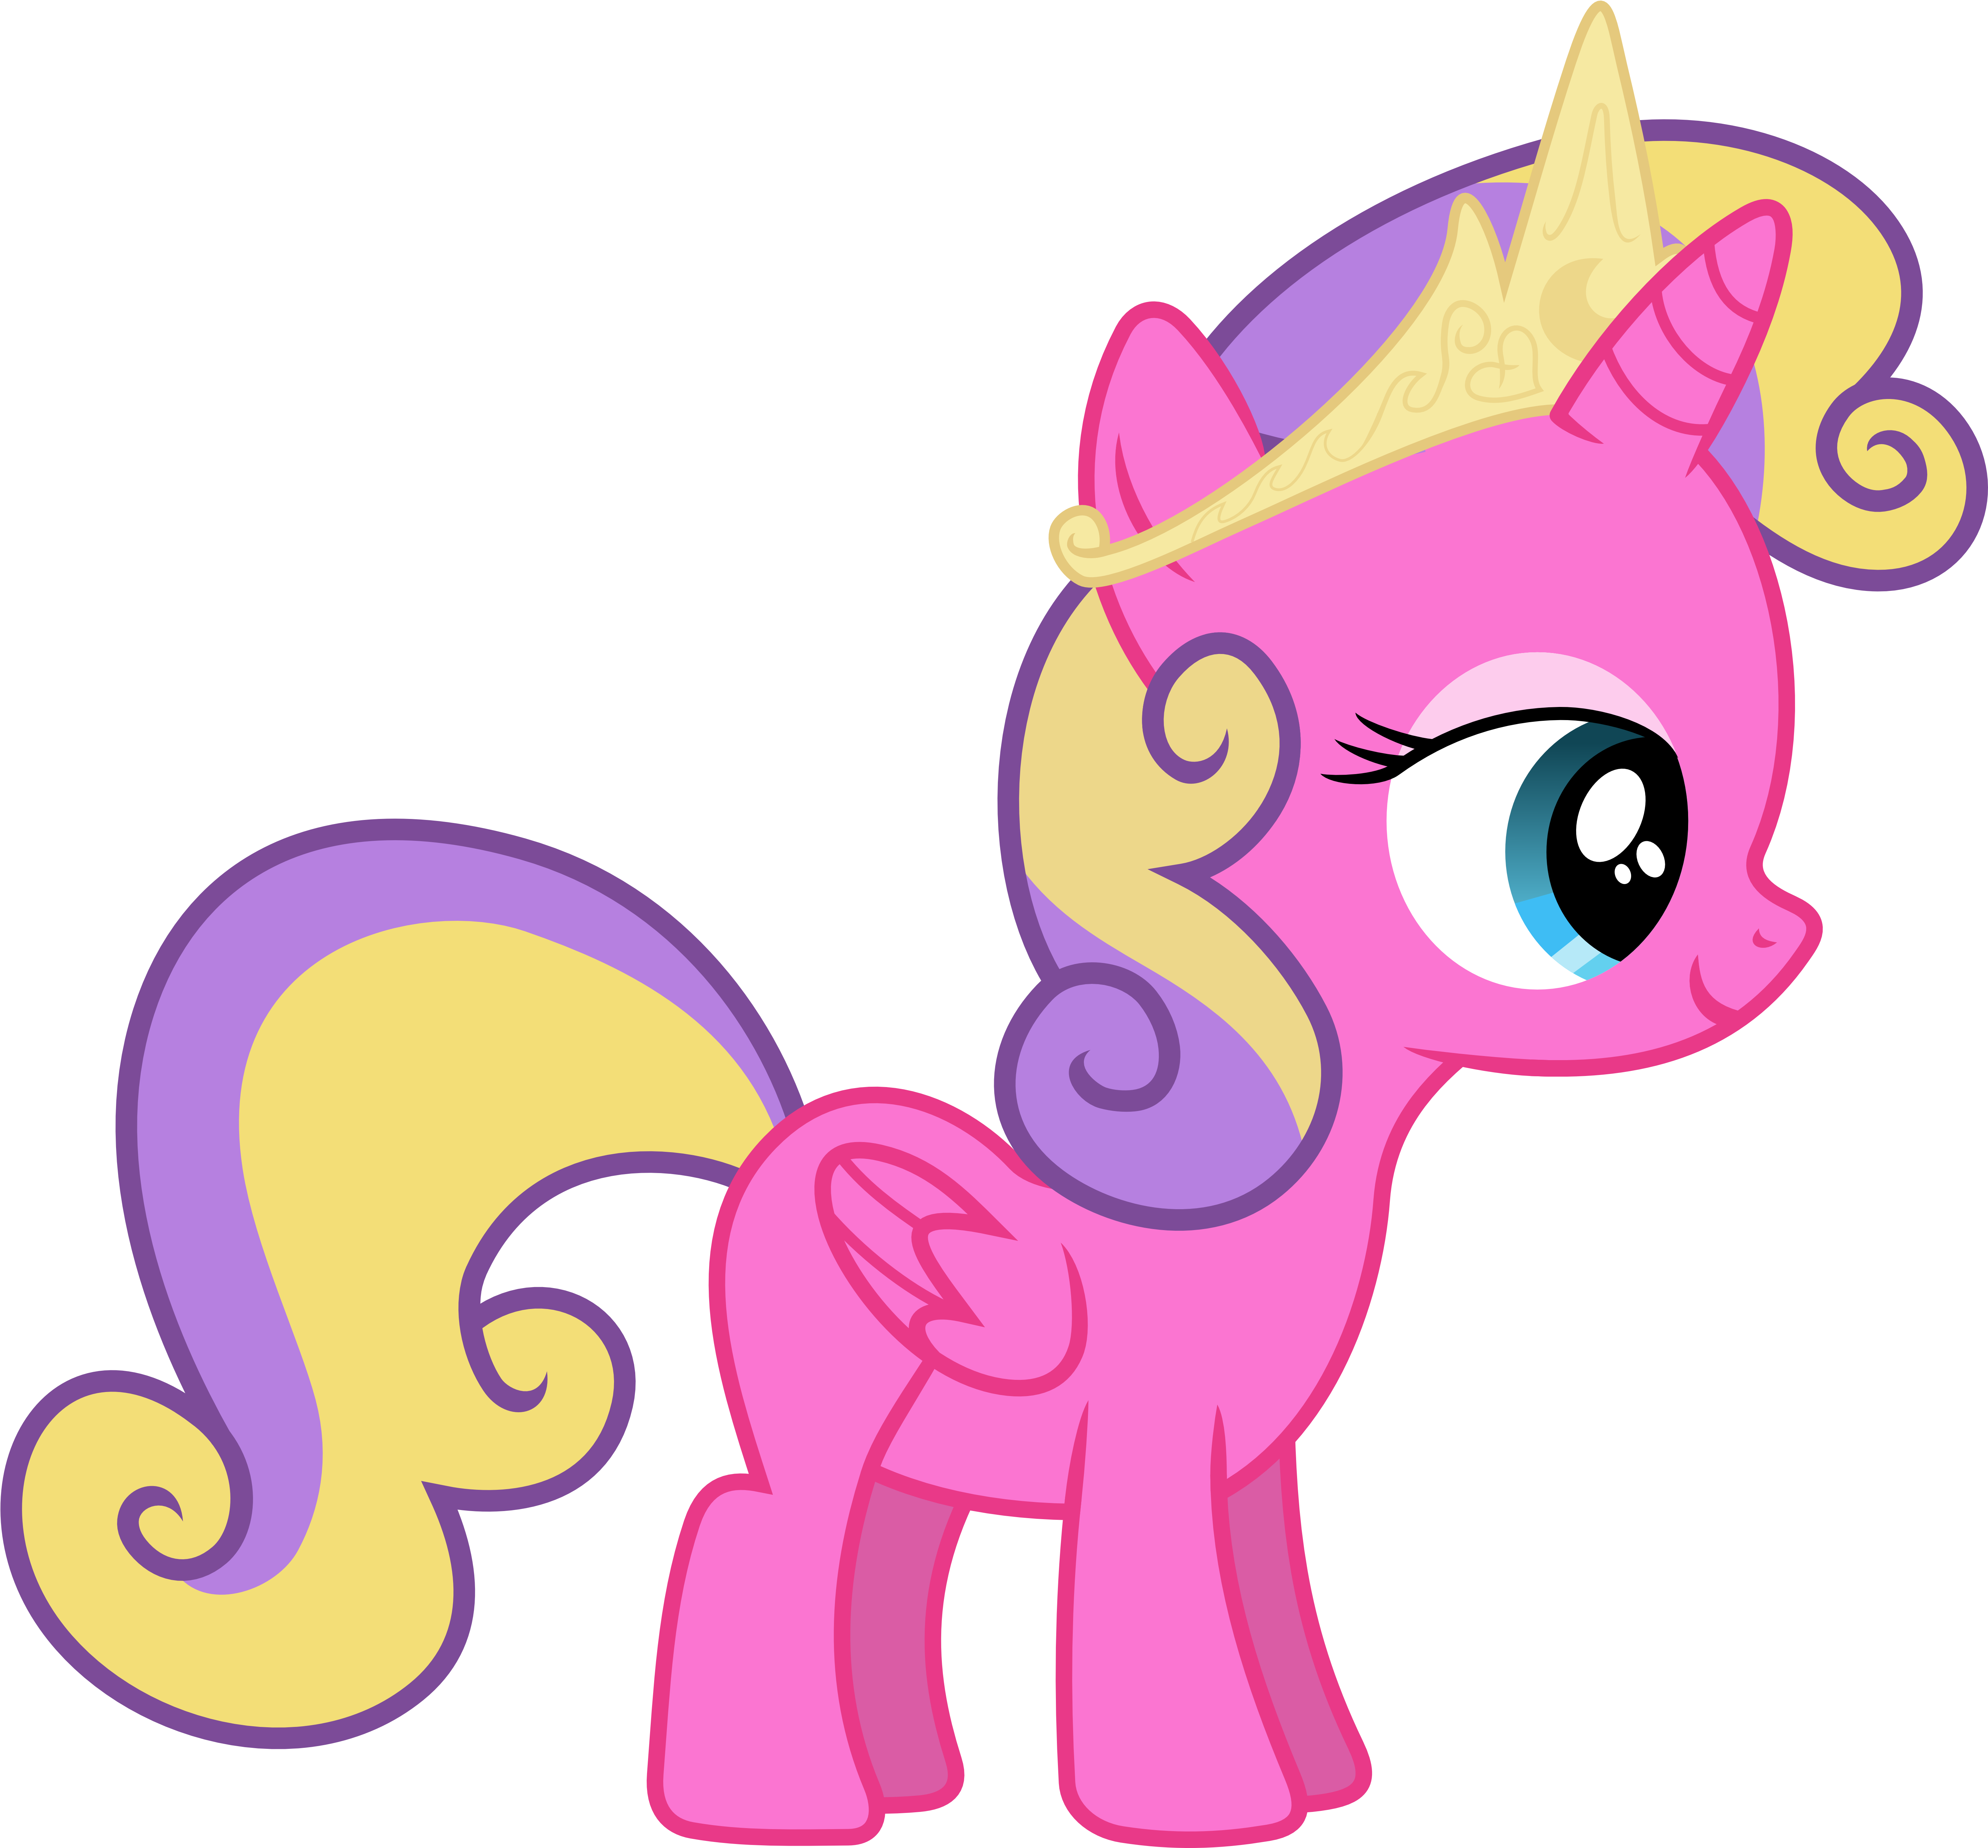 My little Pony принцесса Скайла. Мой маленький пони принцесса Скайла. MLP принцесса Скайла. Принцесса Скайла Харт. Май литл единорог